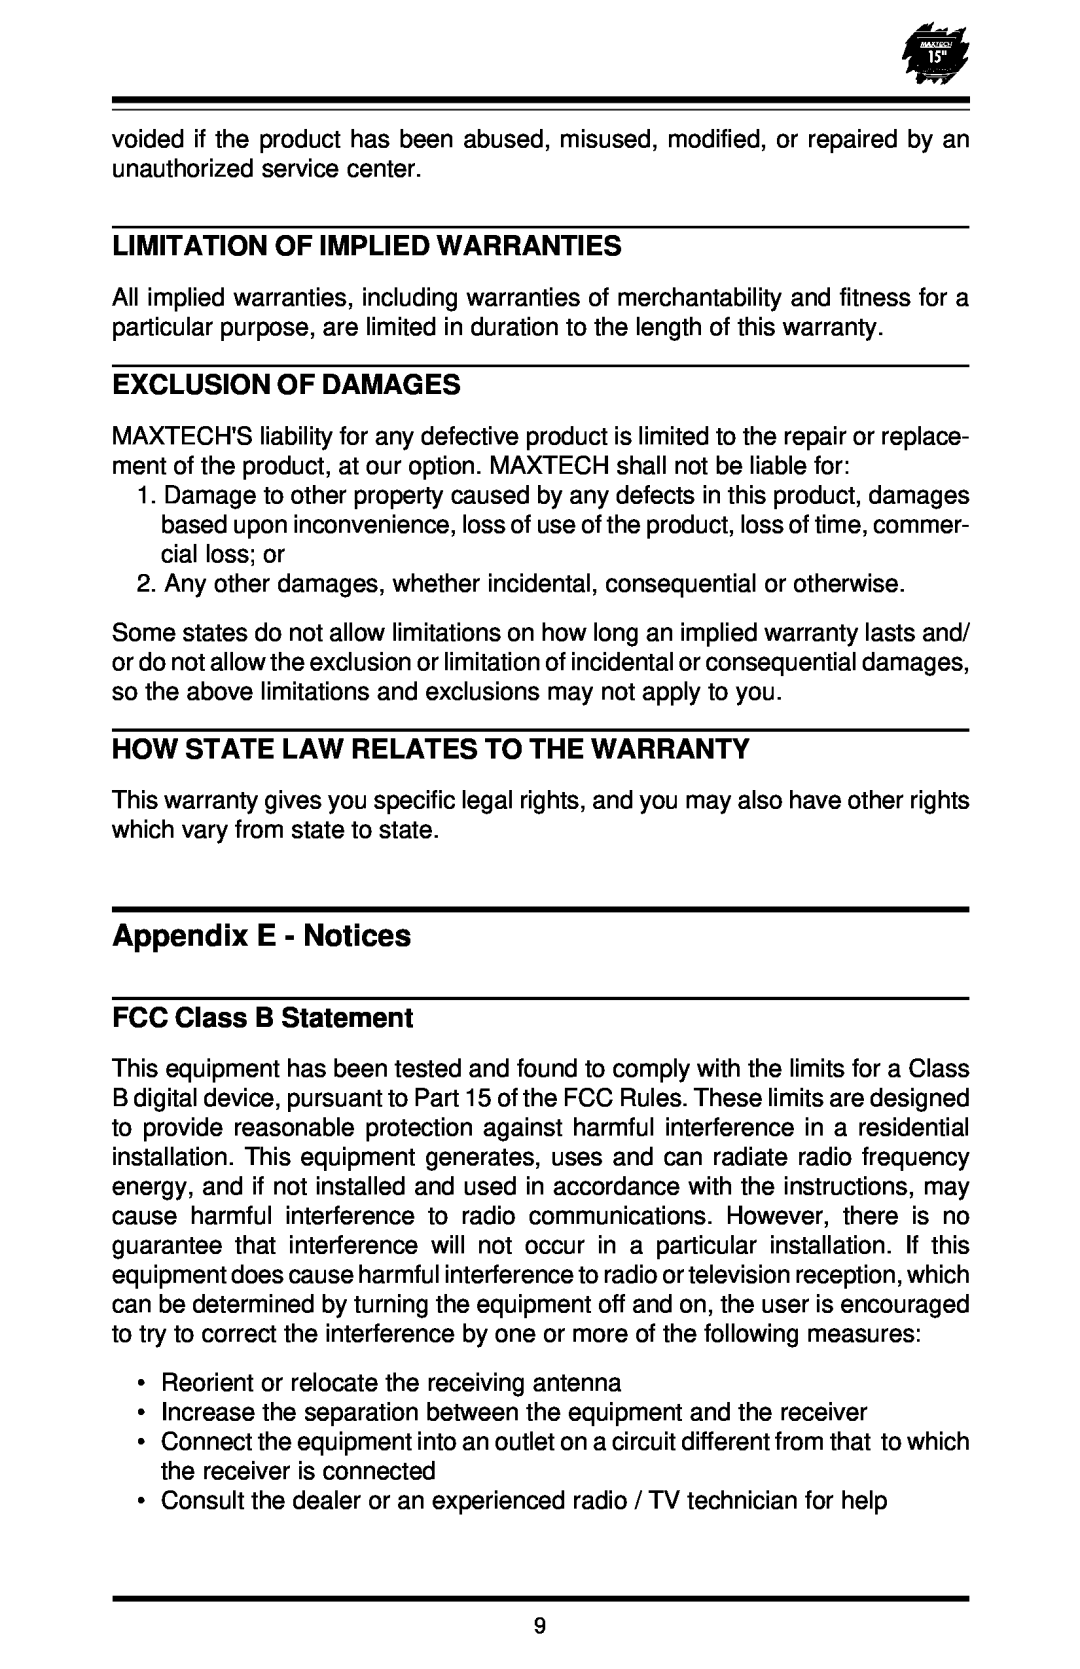 MaxTech XT-5871 Appendix E - Notices, Limitation Of Implied Warranties, Exclusion Of Damages, FCC Class B Statement 